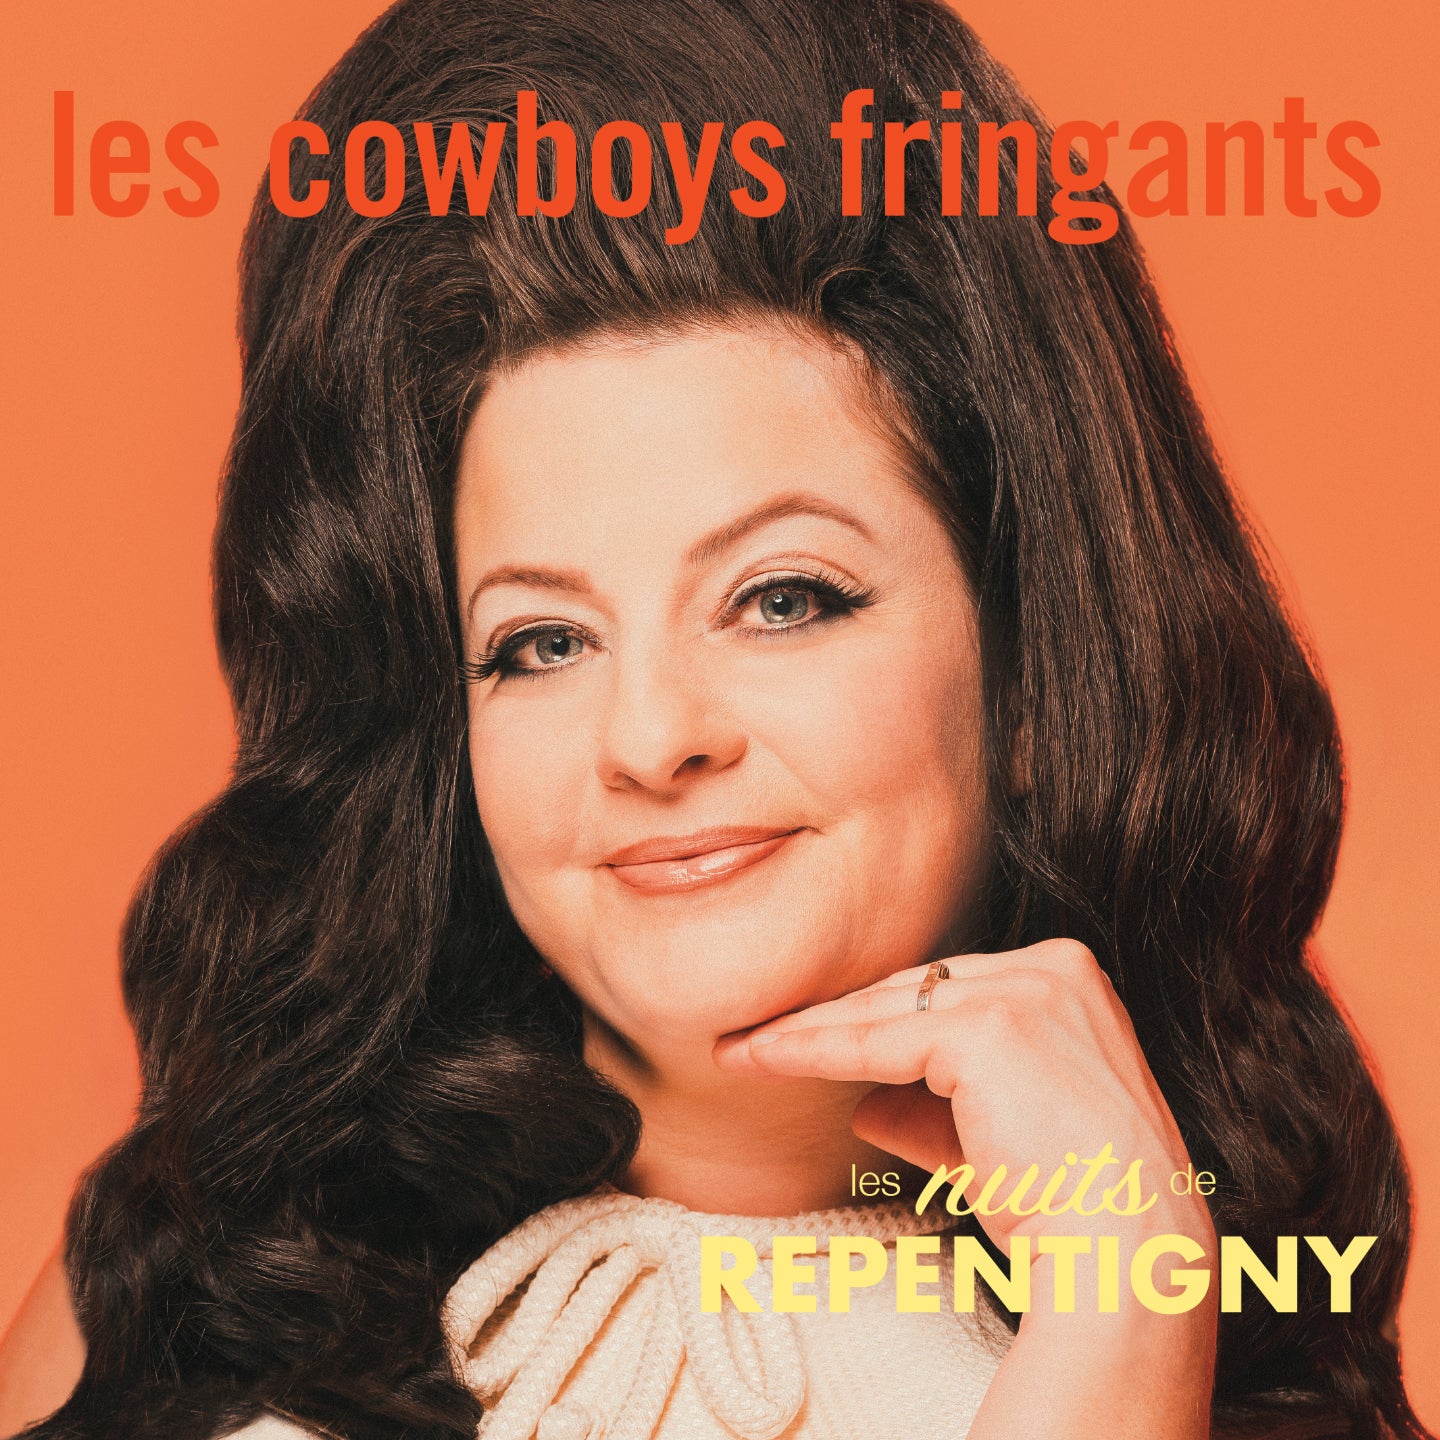 VINYLE – Les Cowboys Fringants – Les nuits de Repentigny – TRILP7411